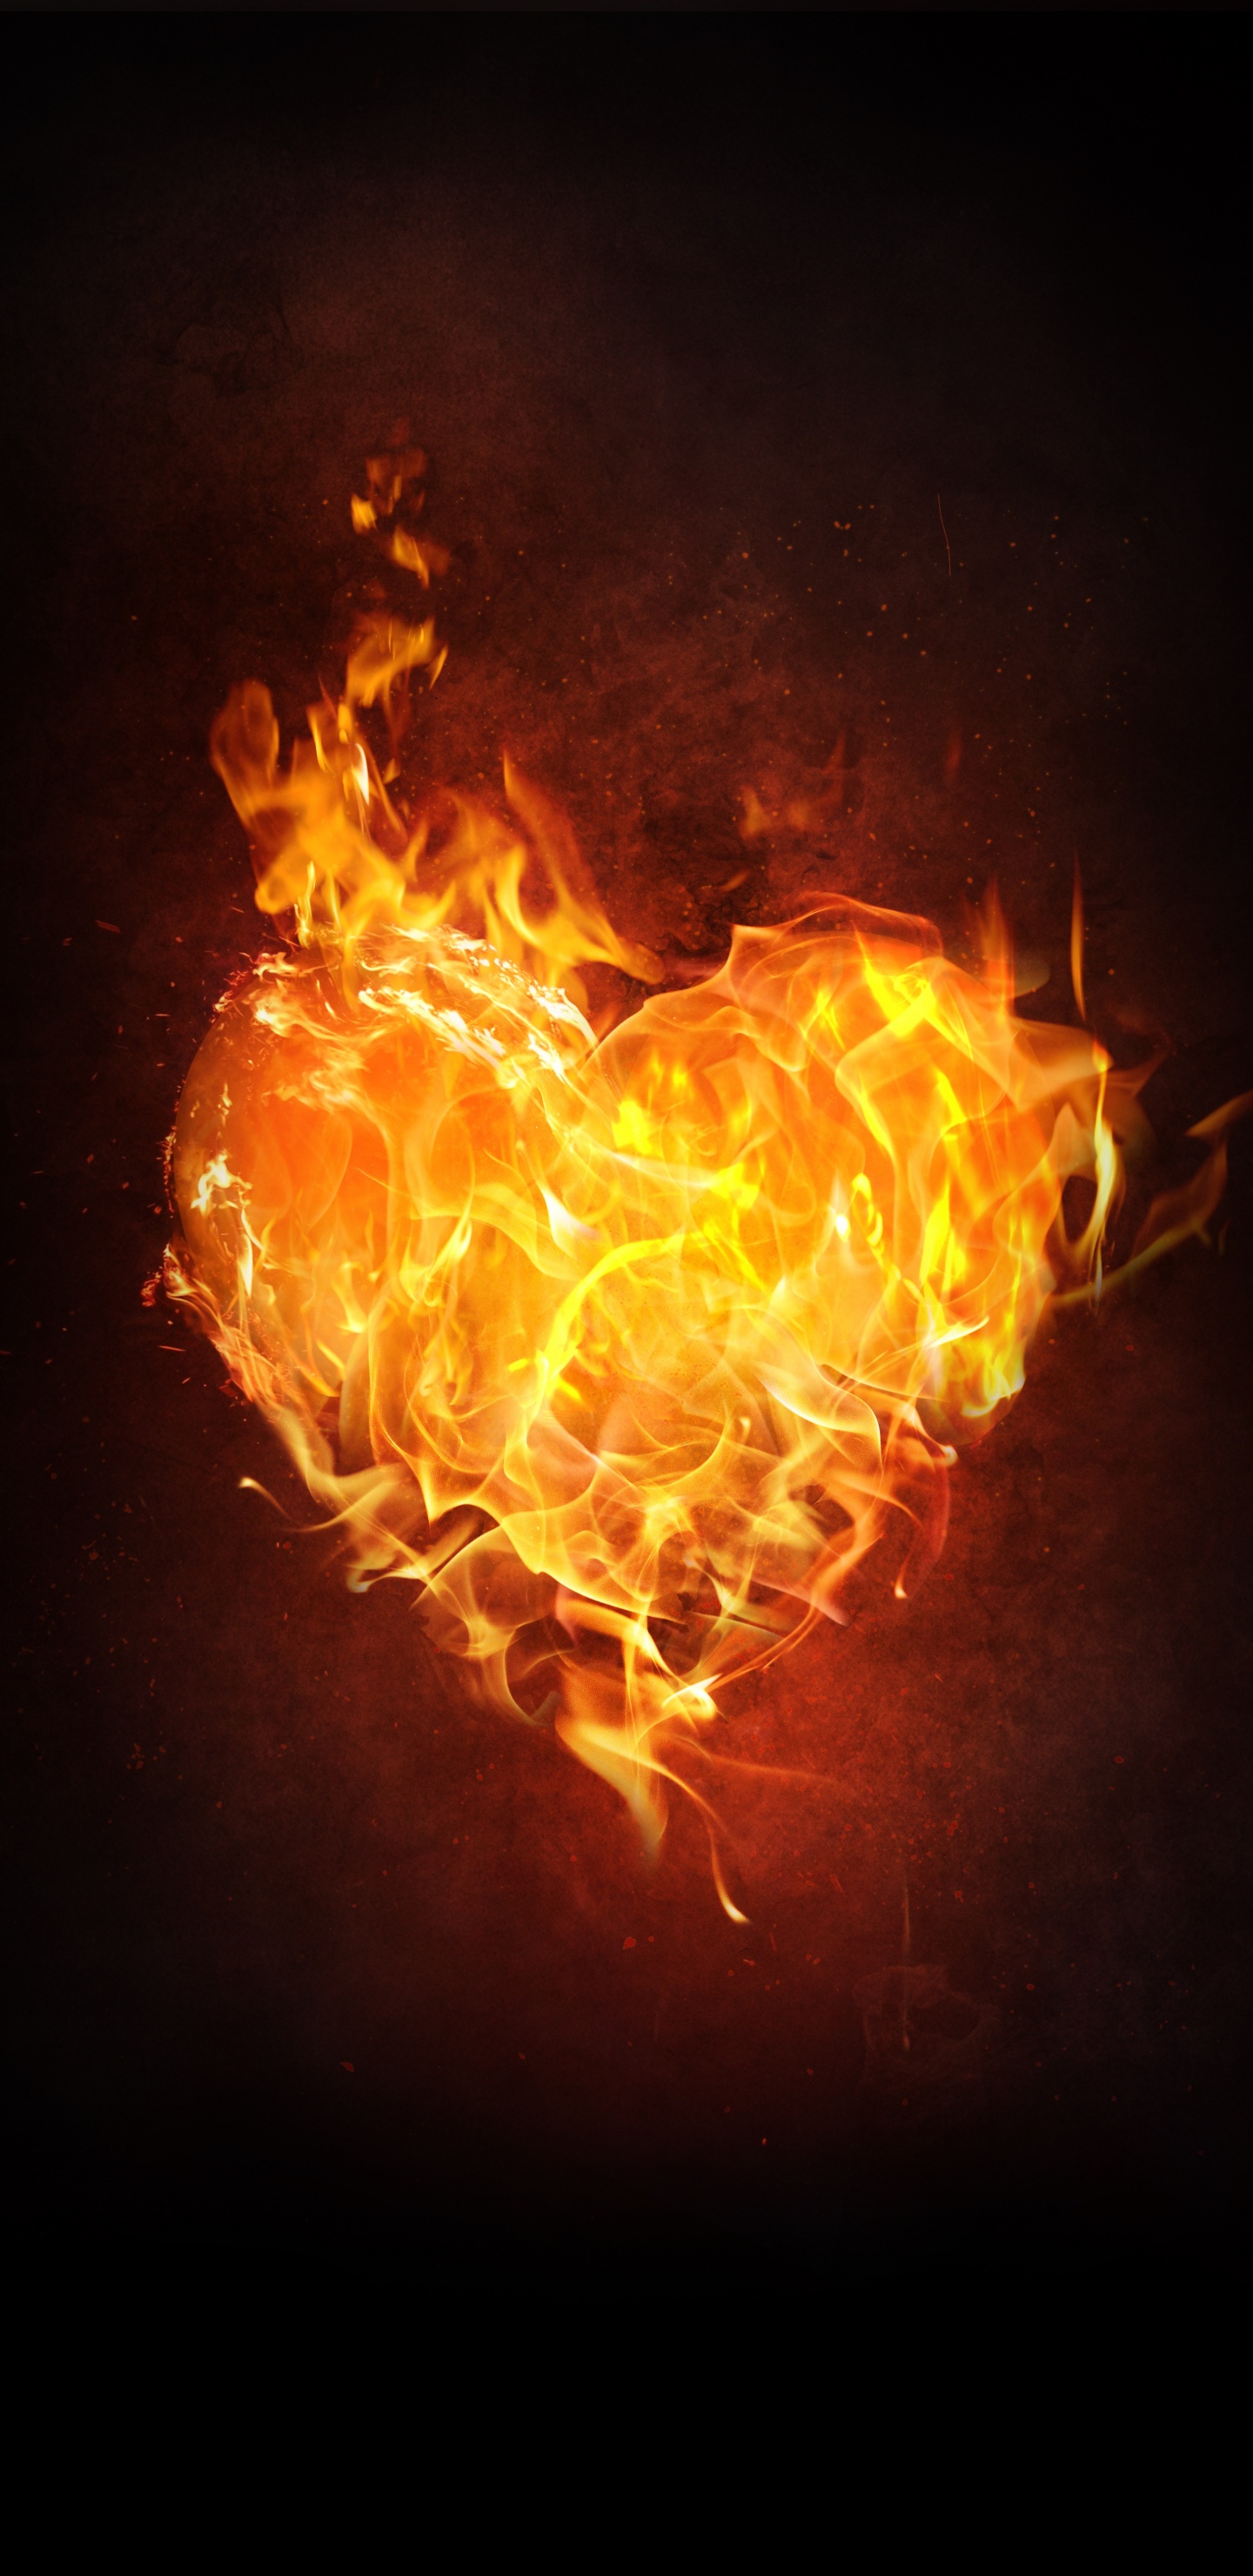 Flame, Fire, Heart, Heat, Orange. Wallpaper in 1440x2960 Resolution